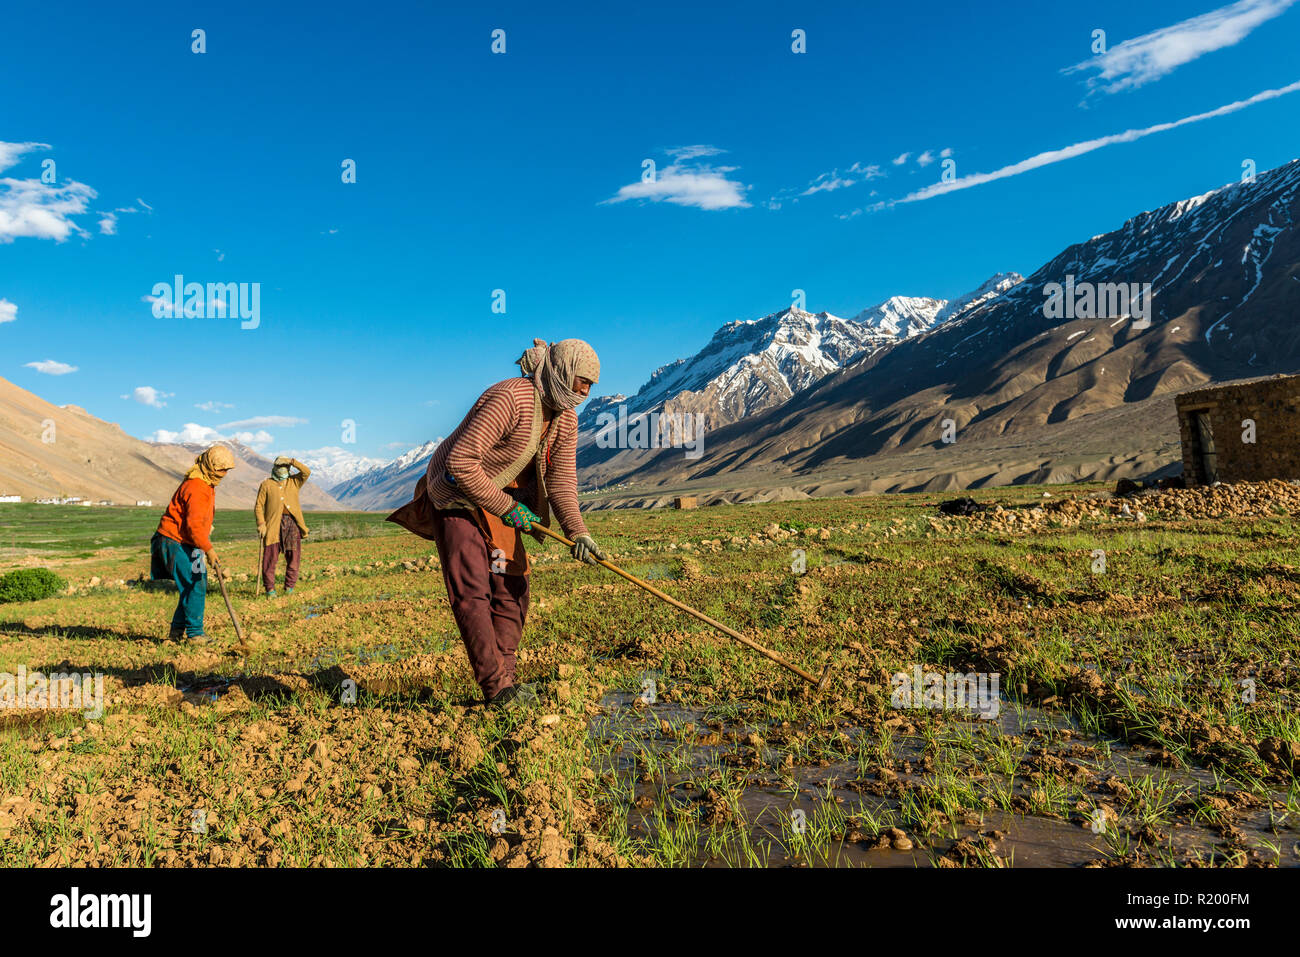 Quattro donne locali irrigazione dei campi al di sotto di Ki Gompa, un tibetano monastero buddista situato sulla sommità di una collina ad una altitudine di 4,166 metri Foto Stock